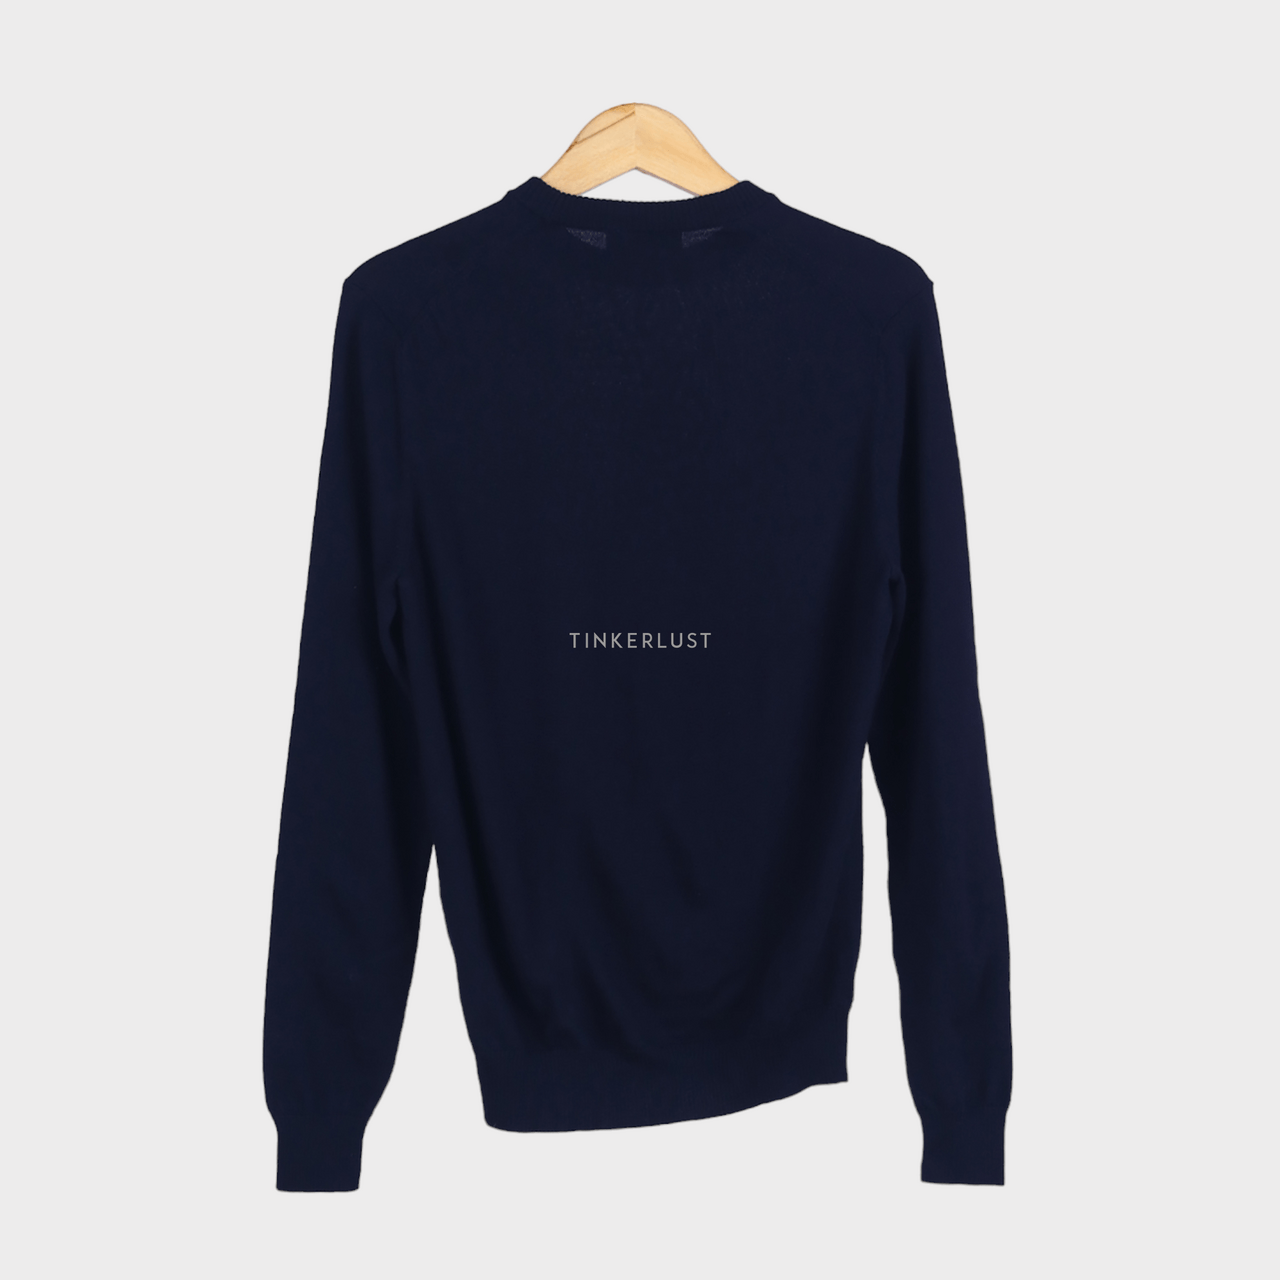 Ami Alexandre Mattiussi Black Logo Embroidered Sweater